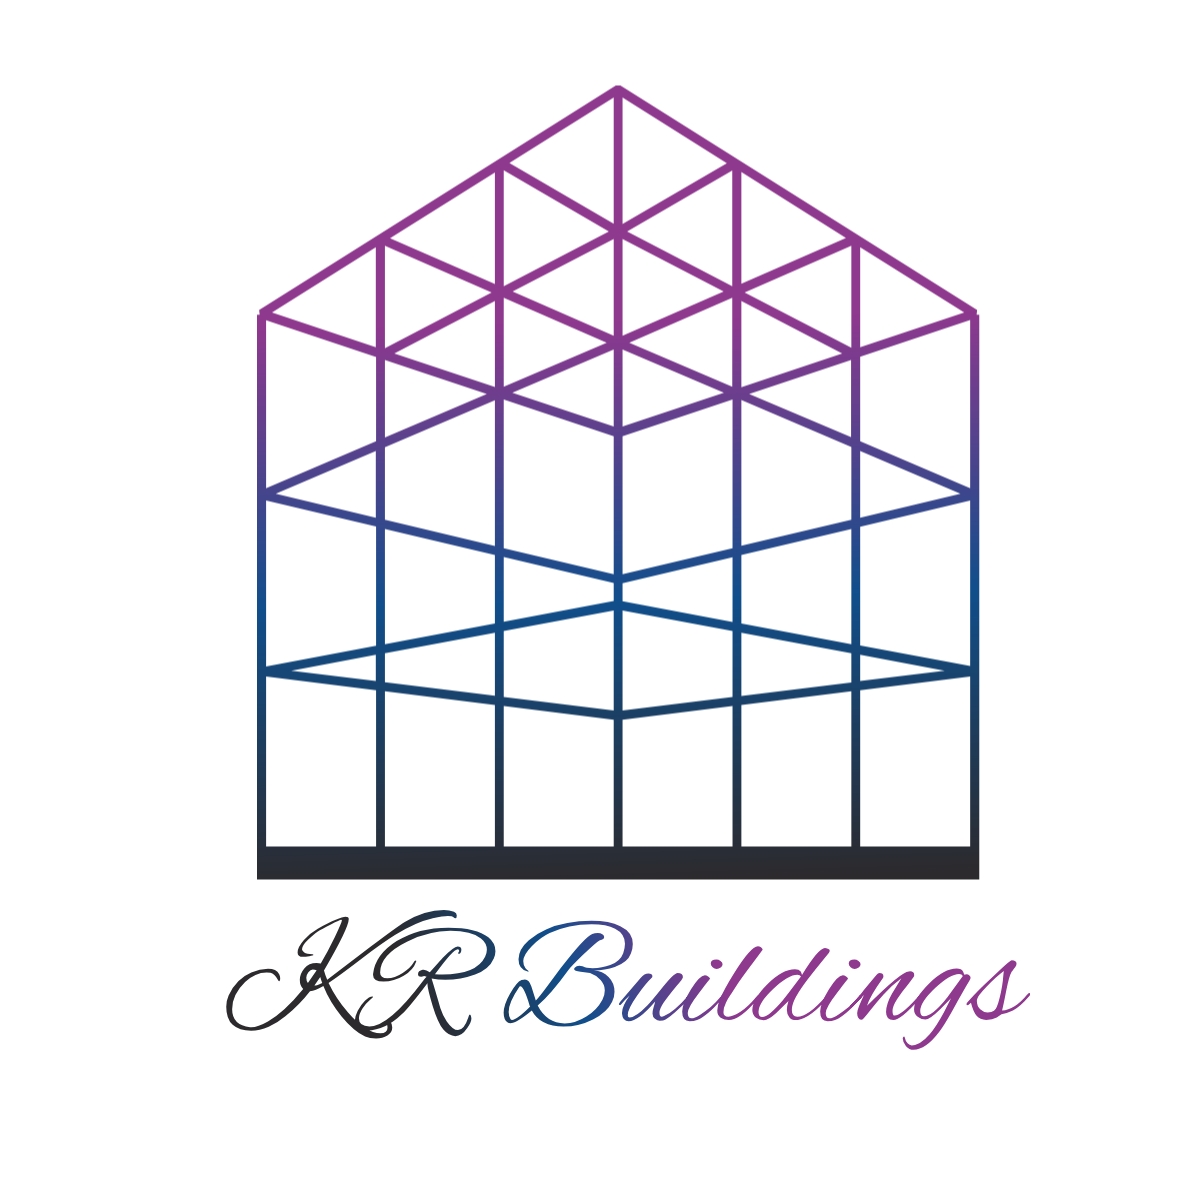 Dream House - набор логотипов для строительной сферы или недвижимости